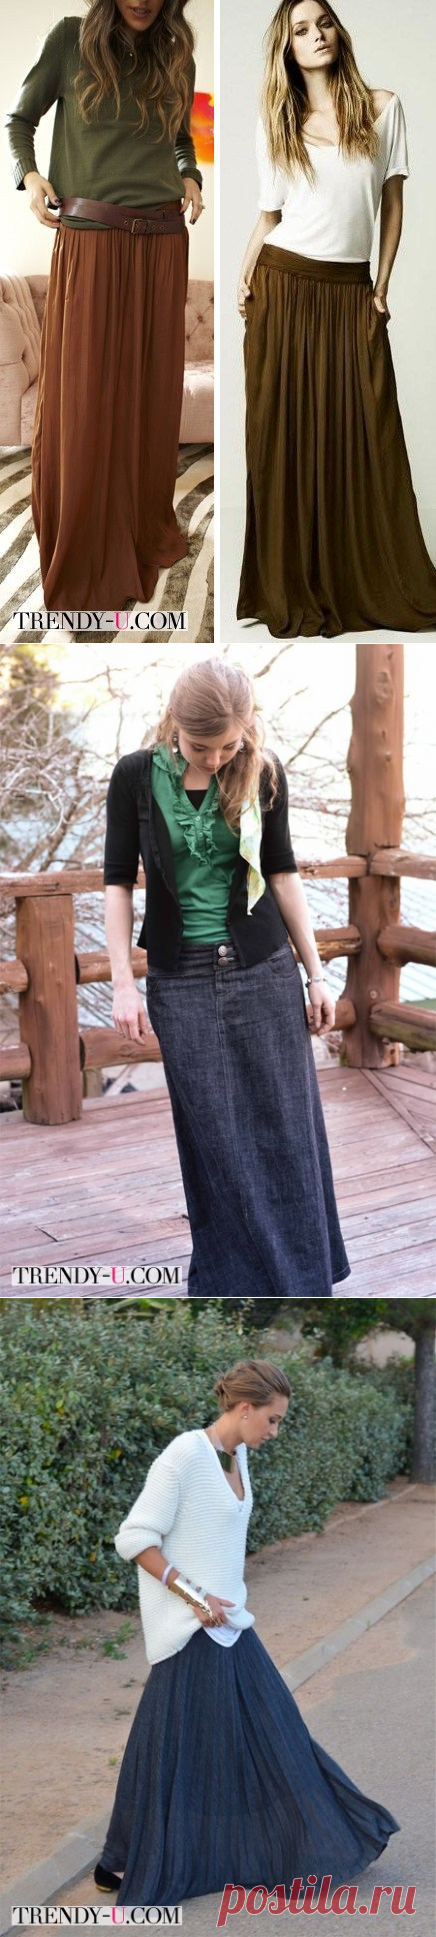 Длинная юбка: как, с чем и зачем носить? | Trendy-u.com